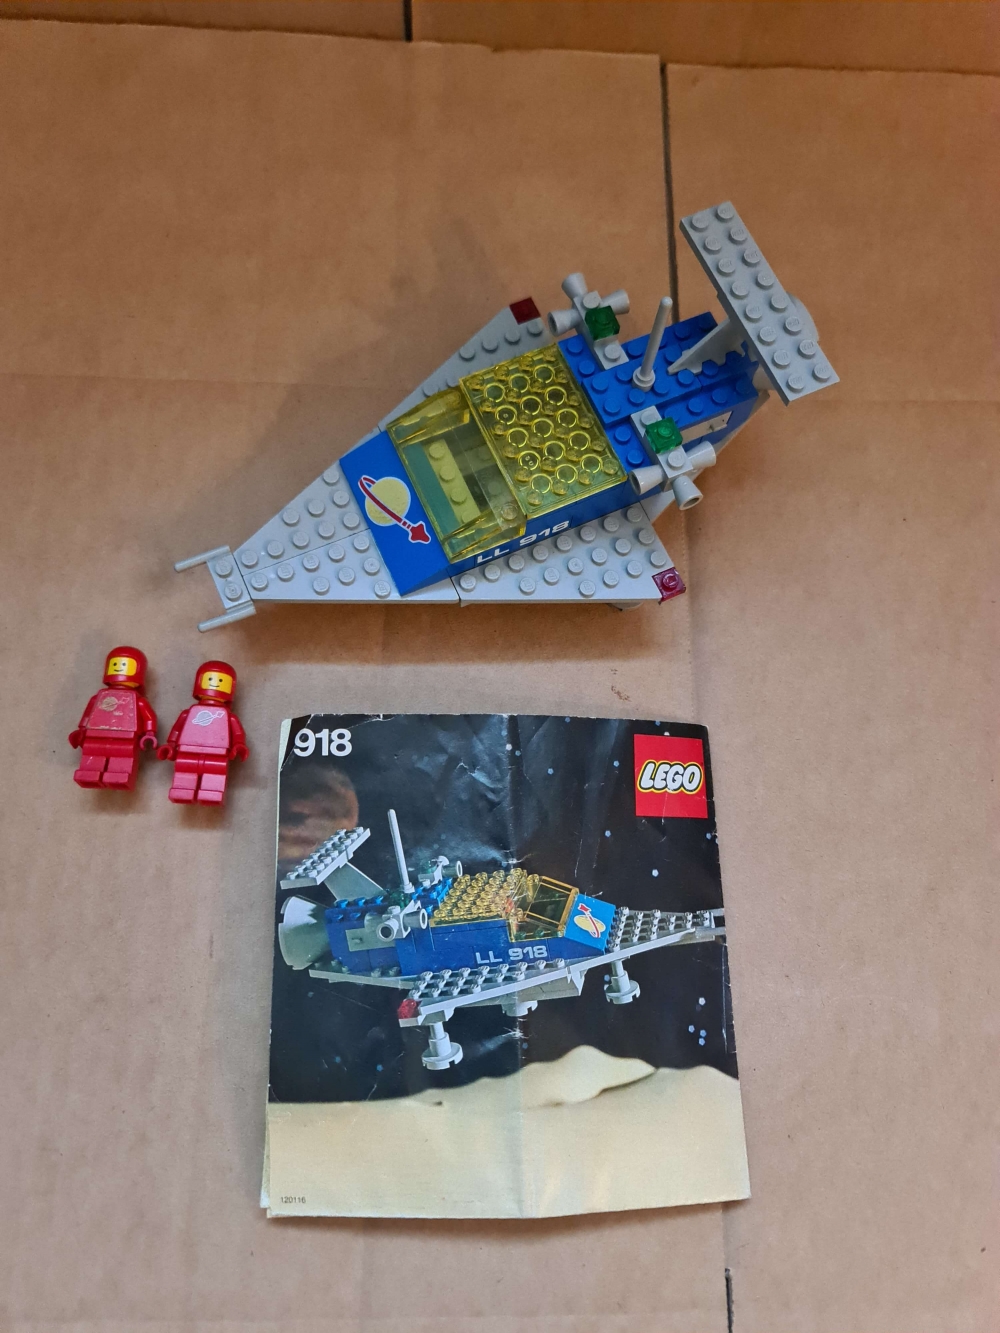 Sett 918 fra Lego Classic Space serien.
Meget pent sett. Komplett med manual.